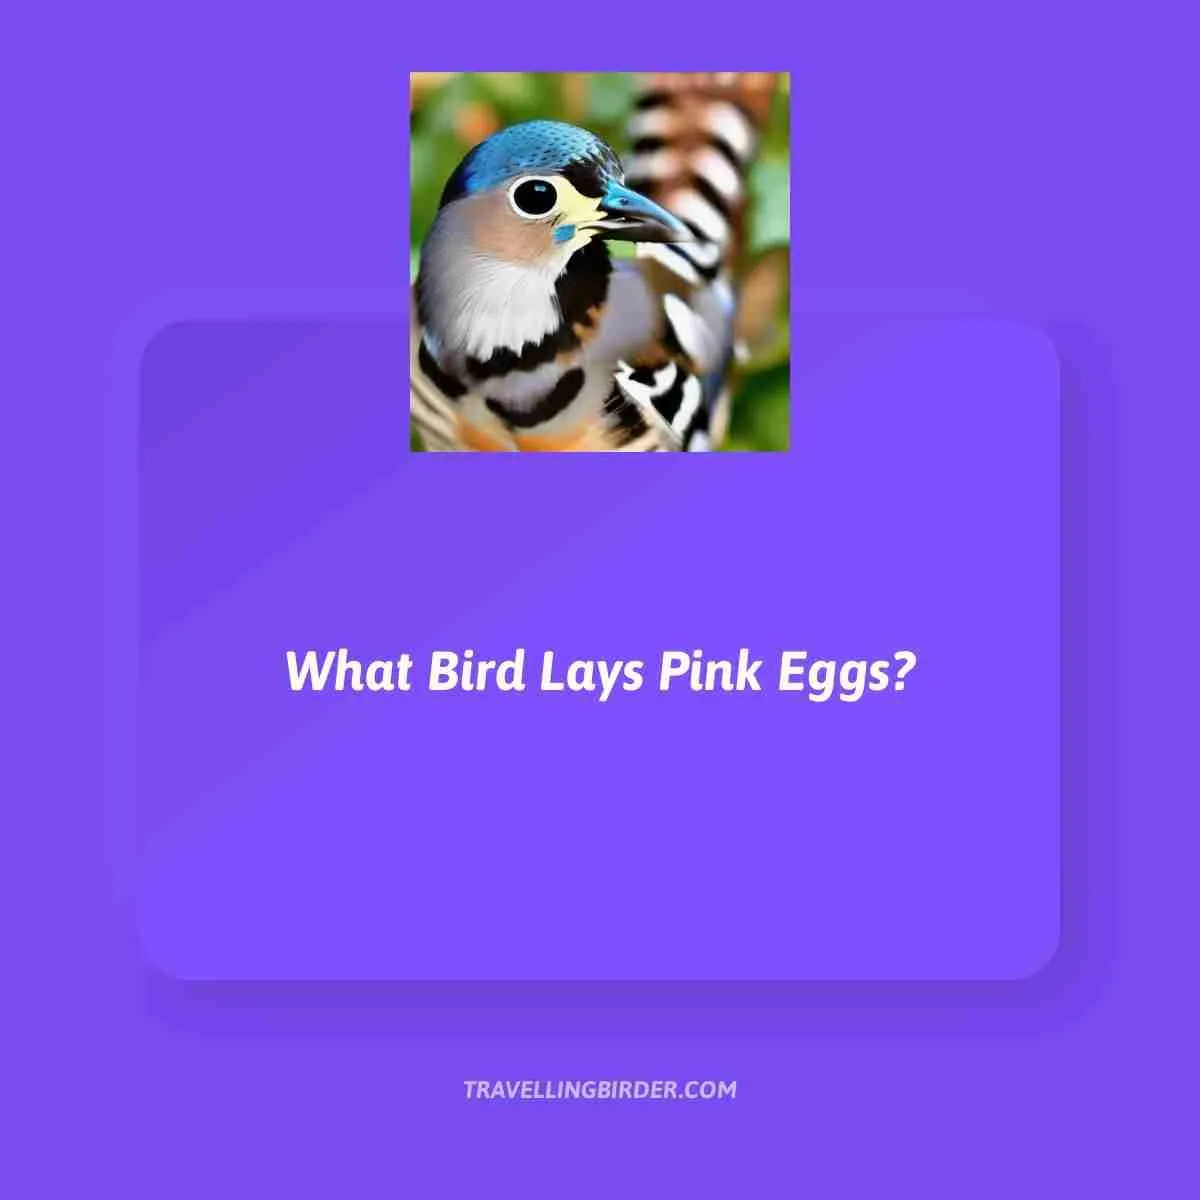 Purple Parrots - Do They Exist? – Parrot Junkie